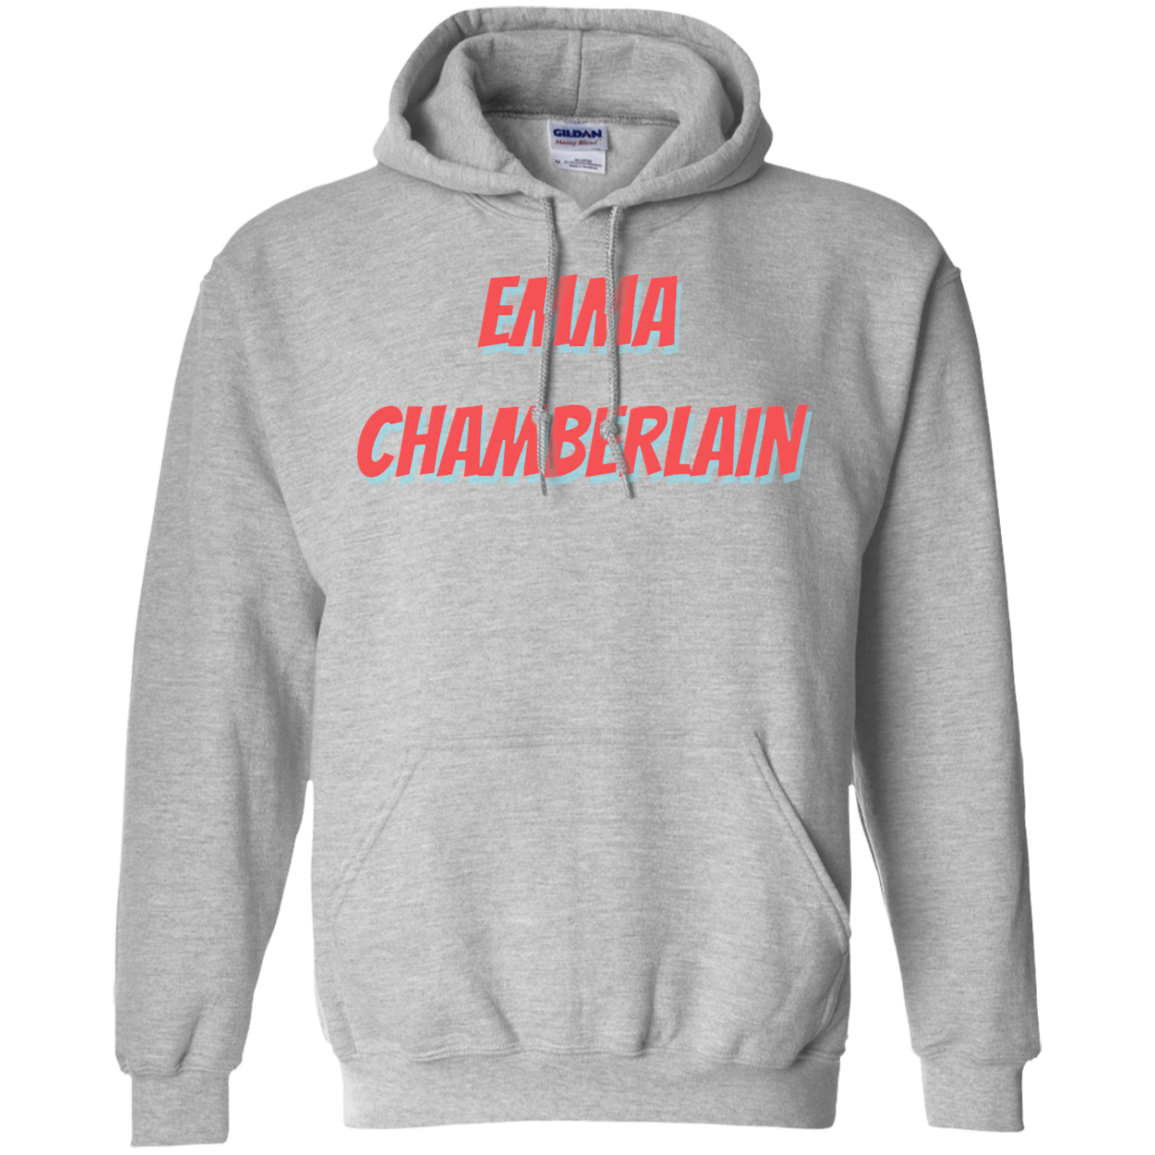 emma chamberlain sweatshirt